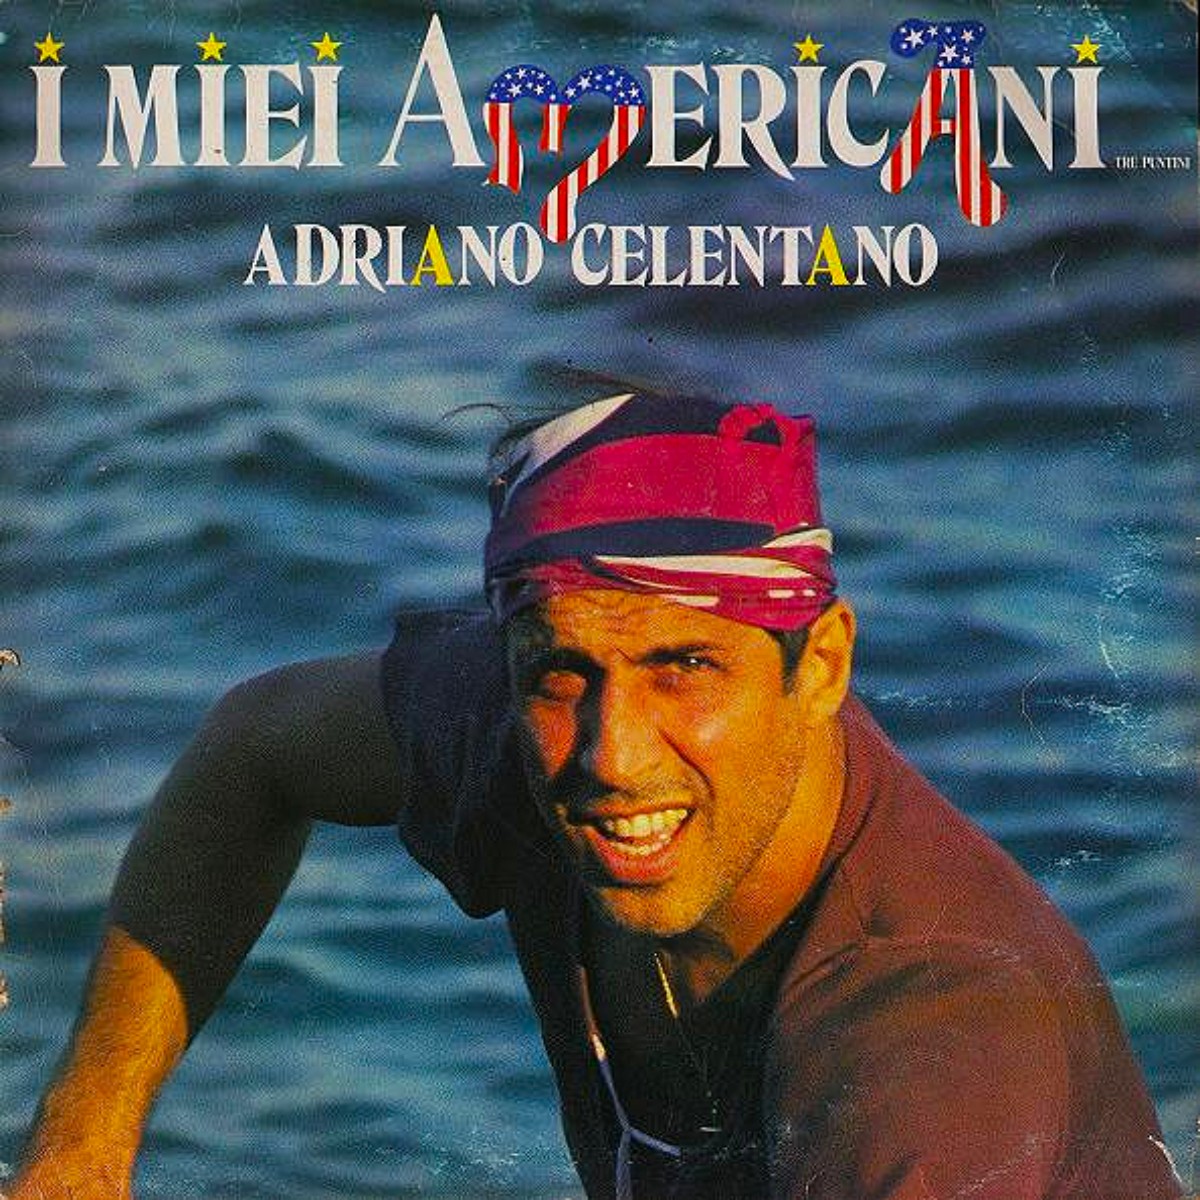 Adriano Celentano, album I miei americani